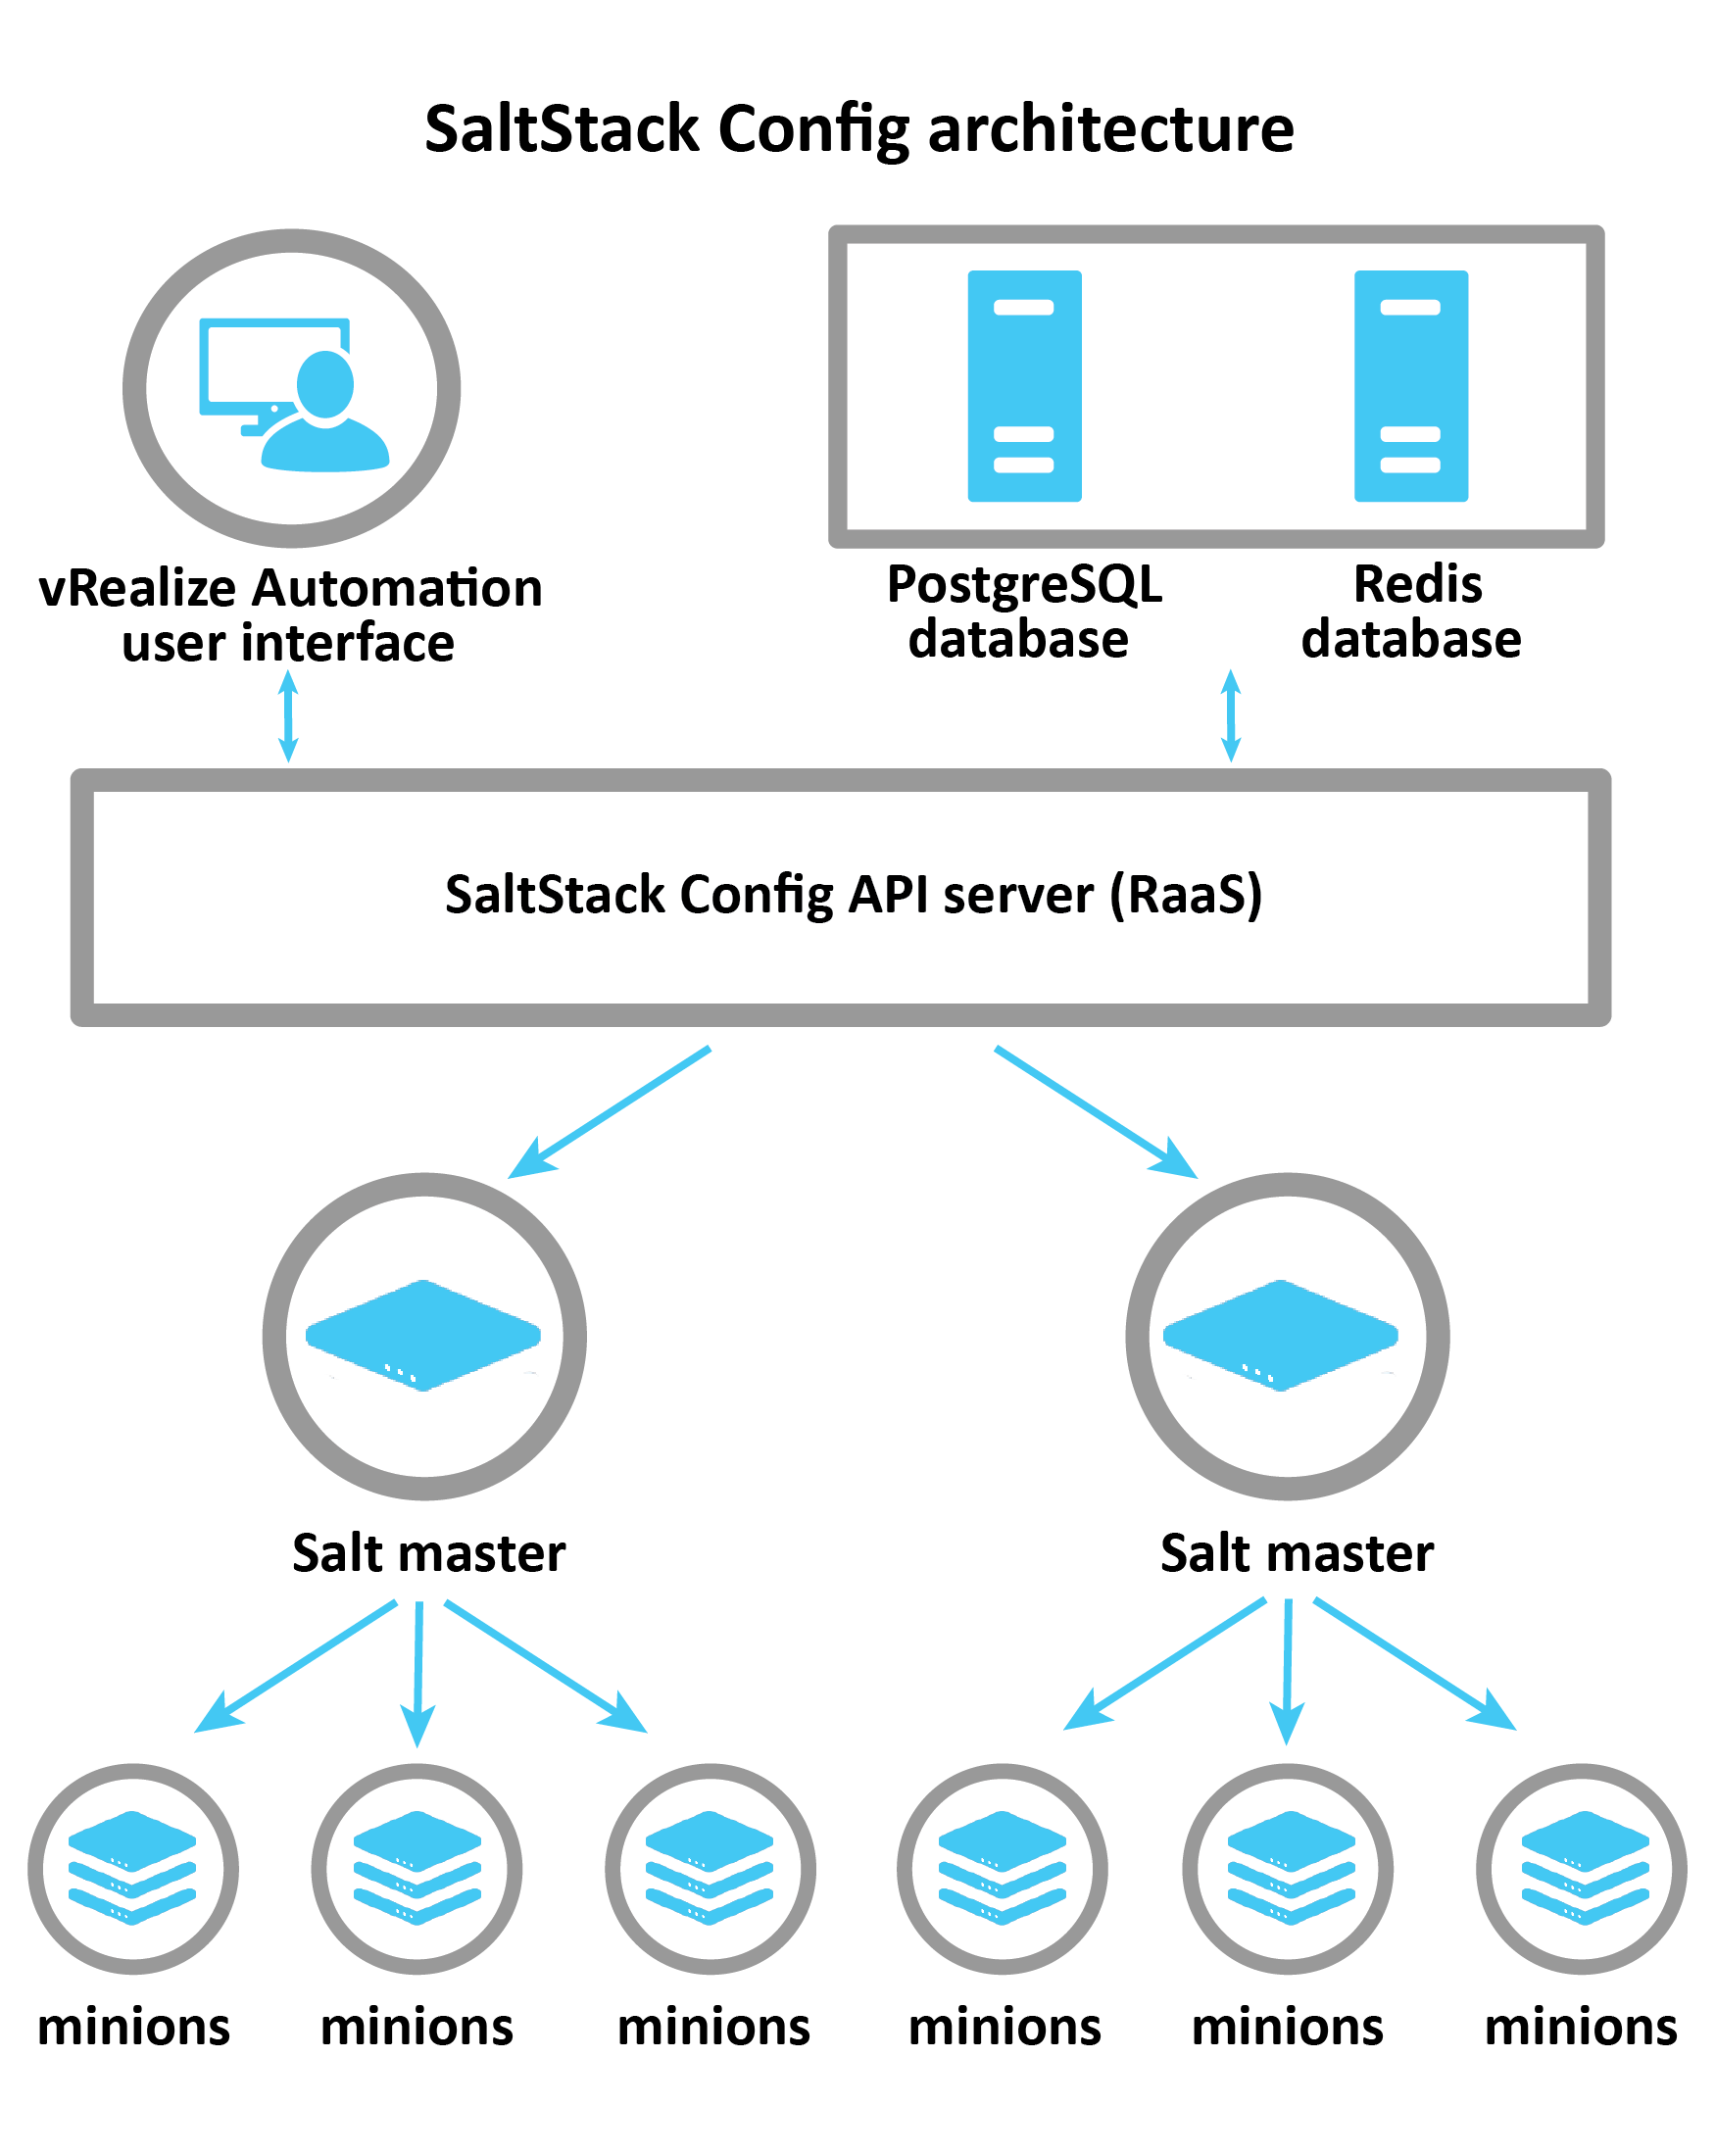 Diagrama que explica a arquitetura do SaltStack Config: vRA, Postgress e Redis se conectam ao servidor RaaS, que controla os Mestres Salt. Em seguida, os Mestres Salt passam informações para subordinados individuais.